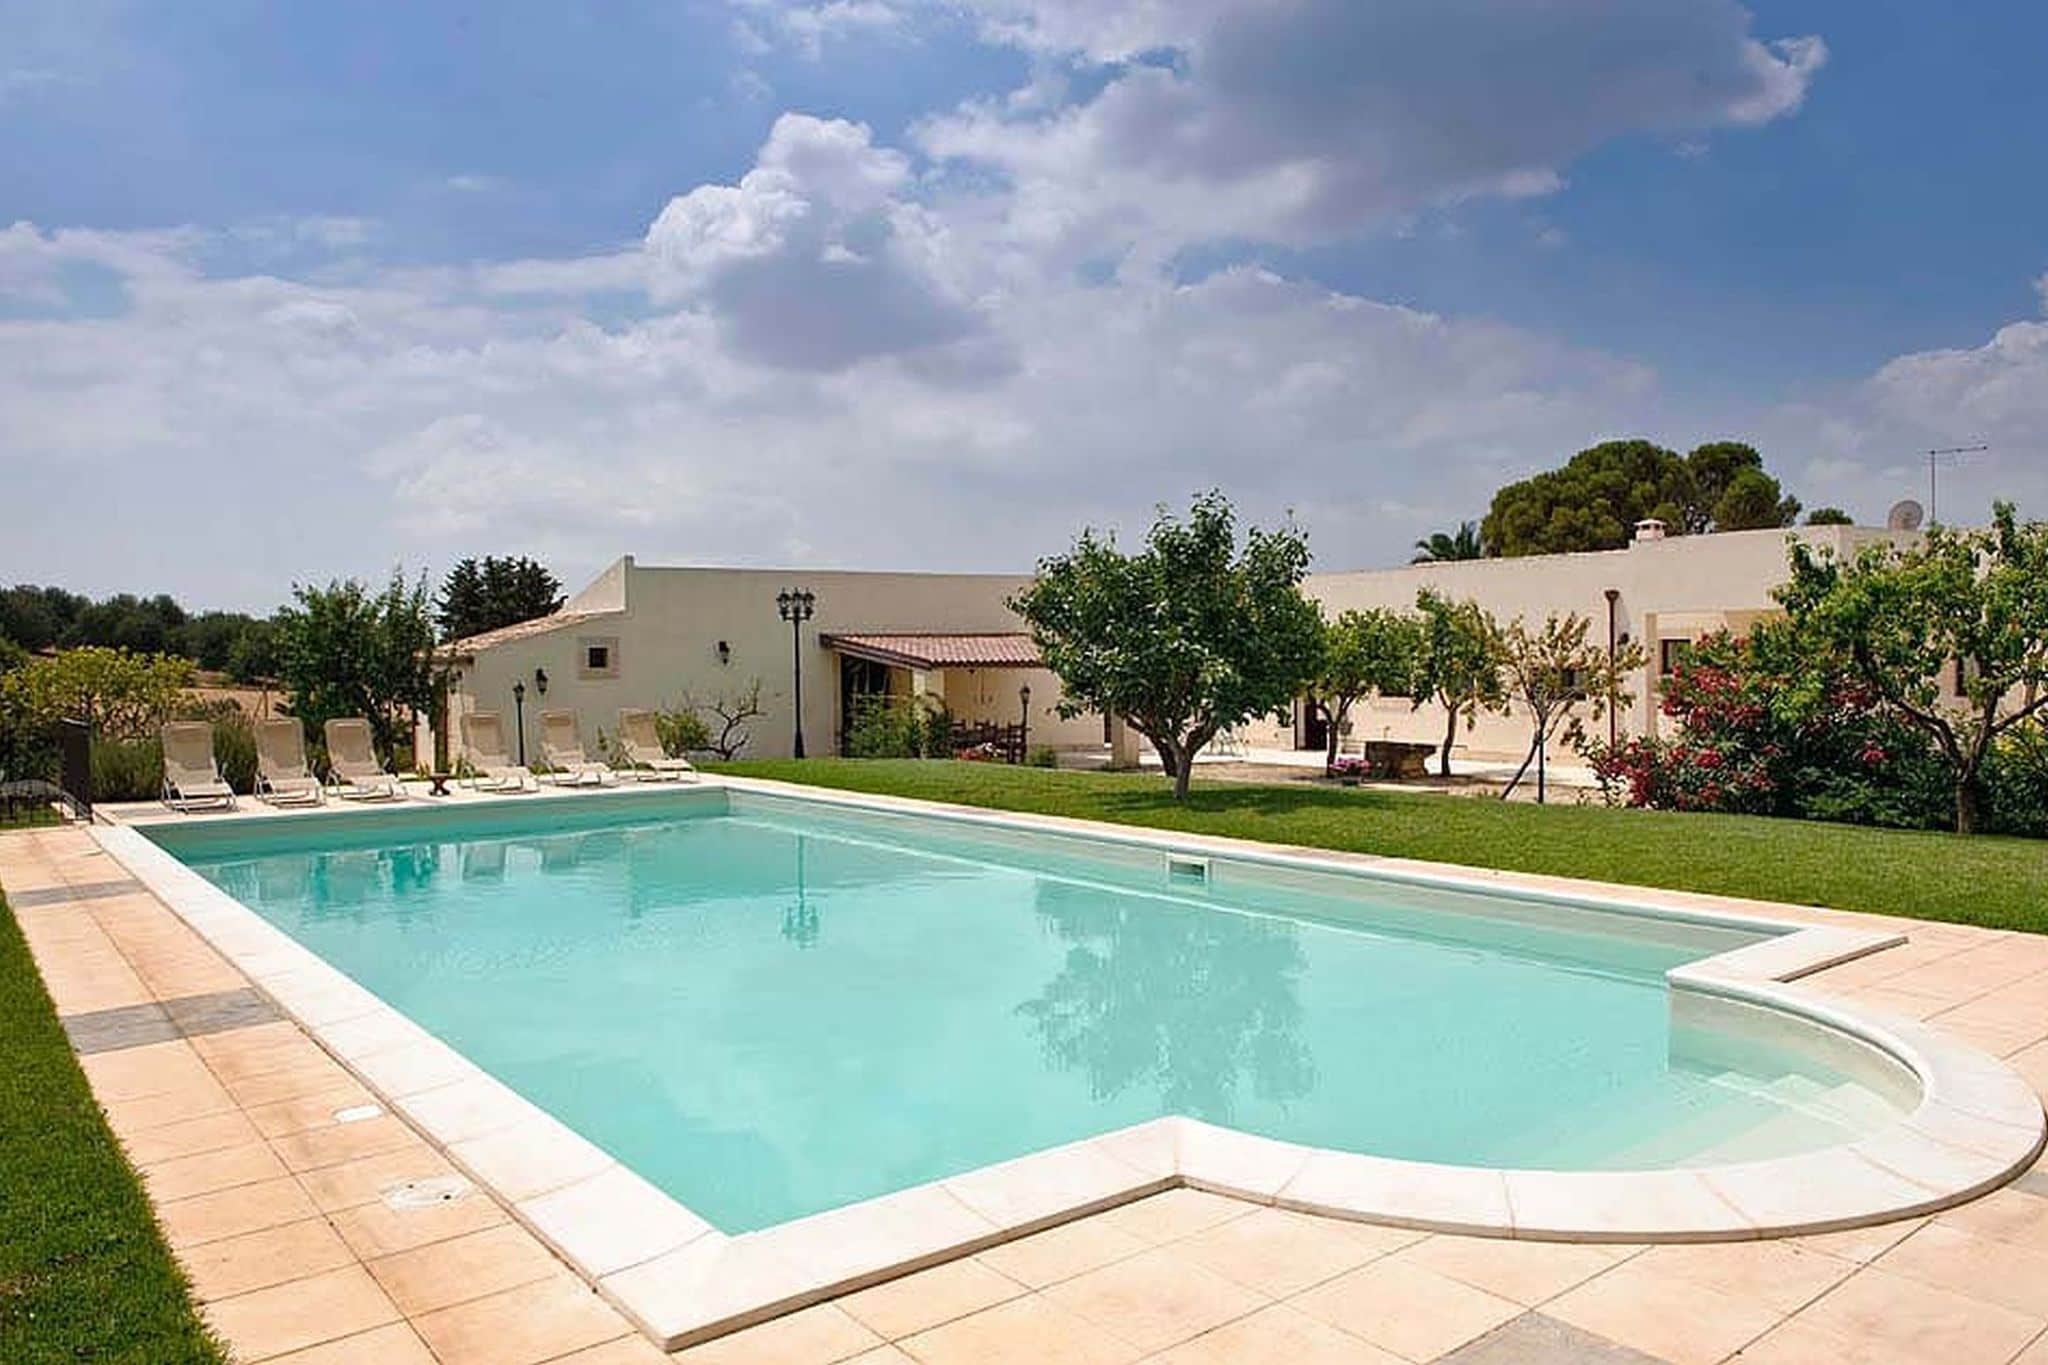 Oude résidence op het platteland met zwembad, in het hart van barok Sicilië